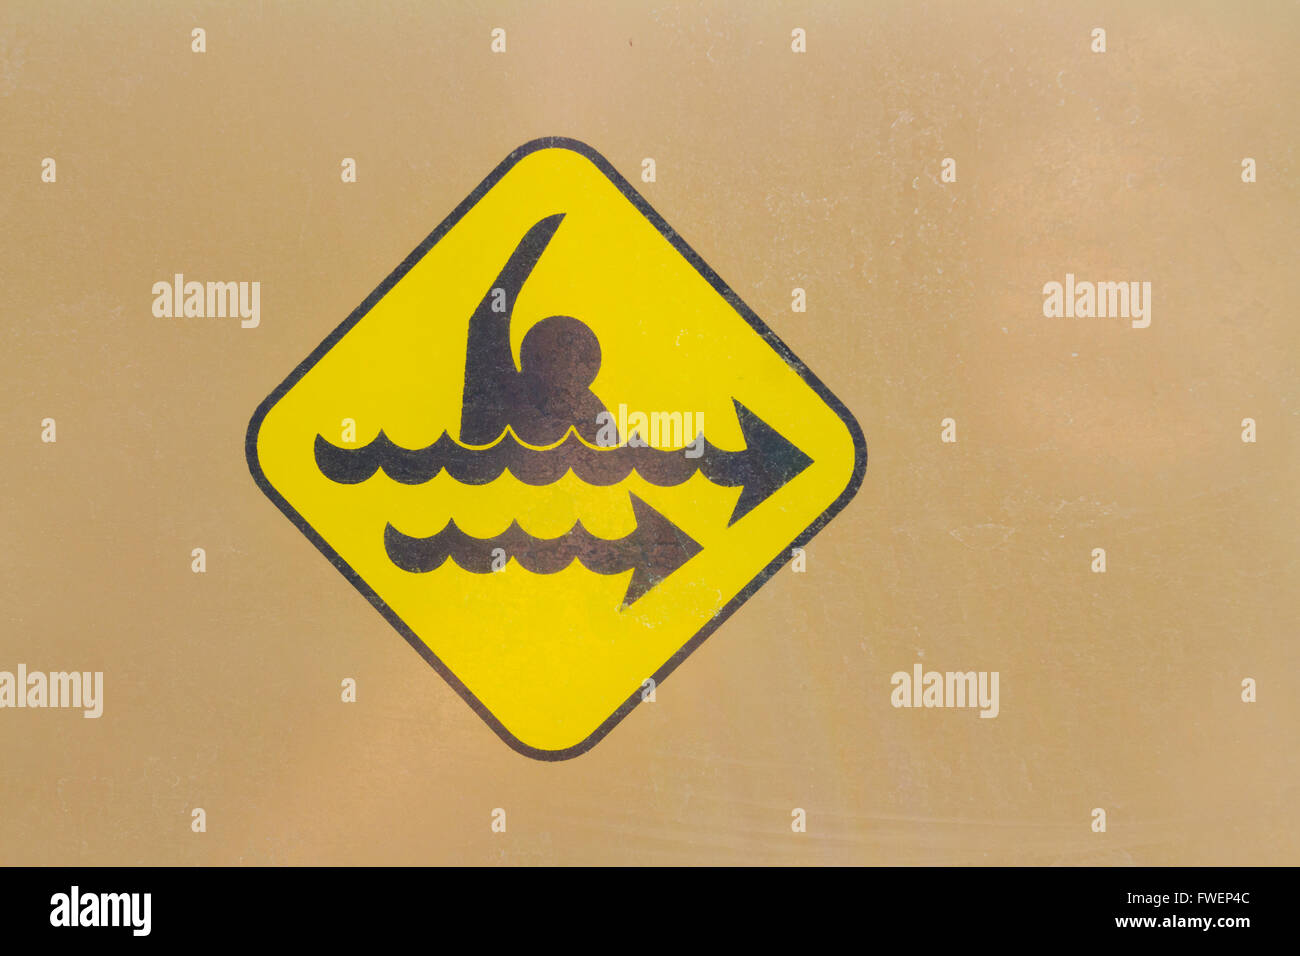 Ein Warnsymbol Zeichen zeigt die Gefahr einer starken Rip-Strömung. Dieses gelbe Gefahr-Zeichen ist universell. Stockfoto